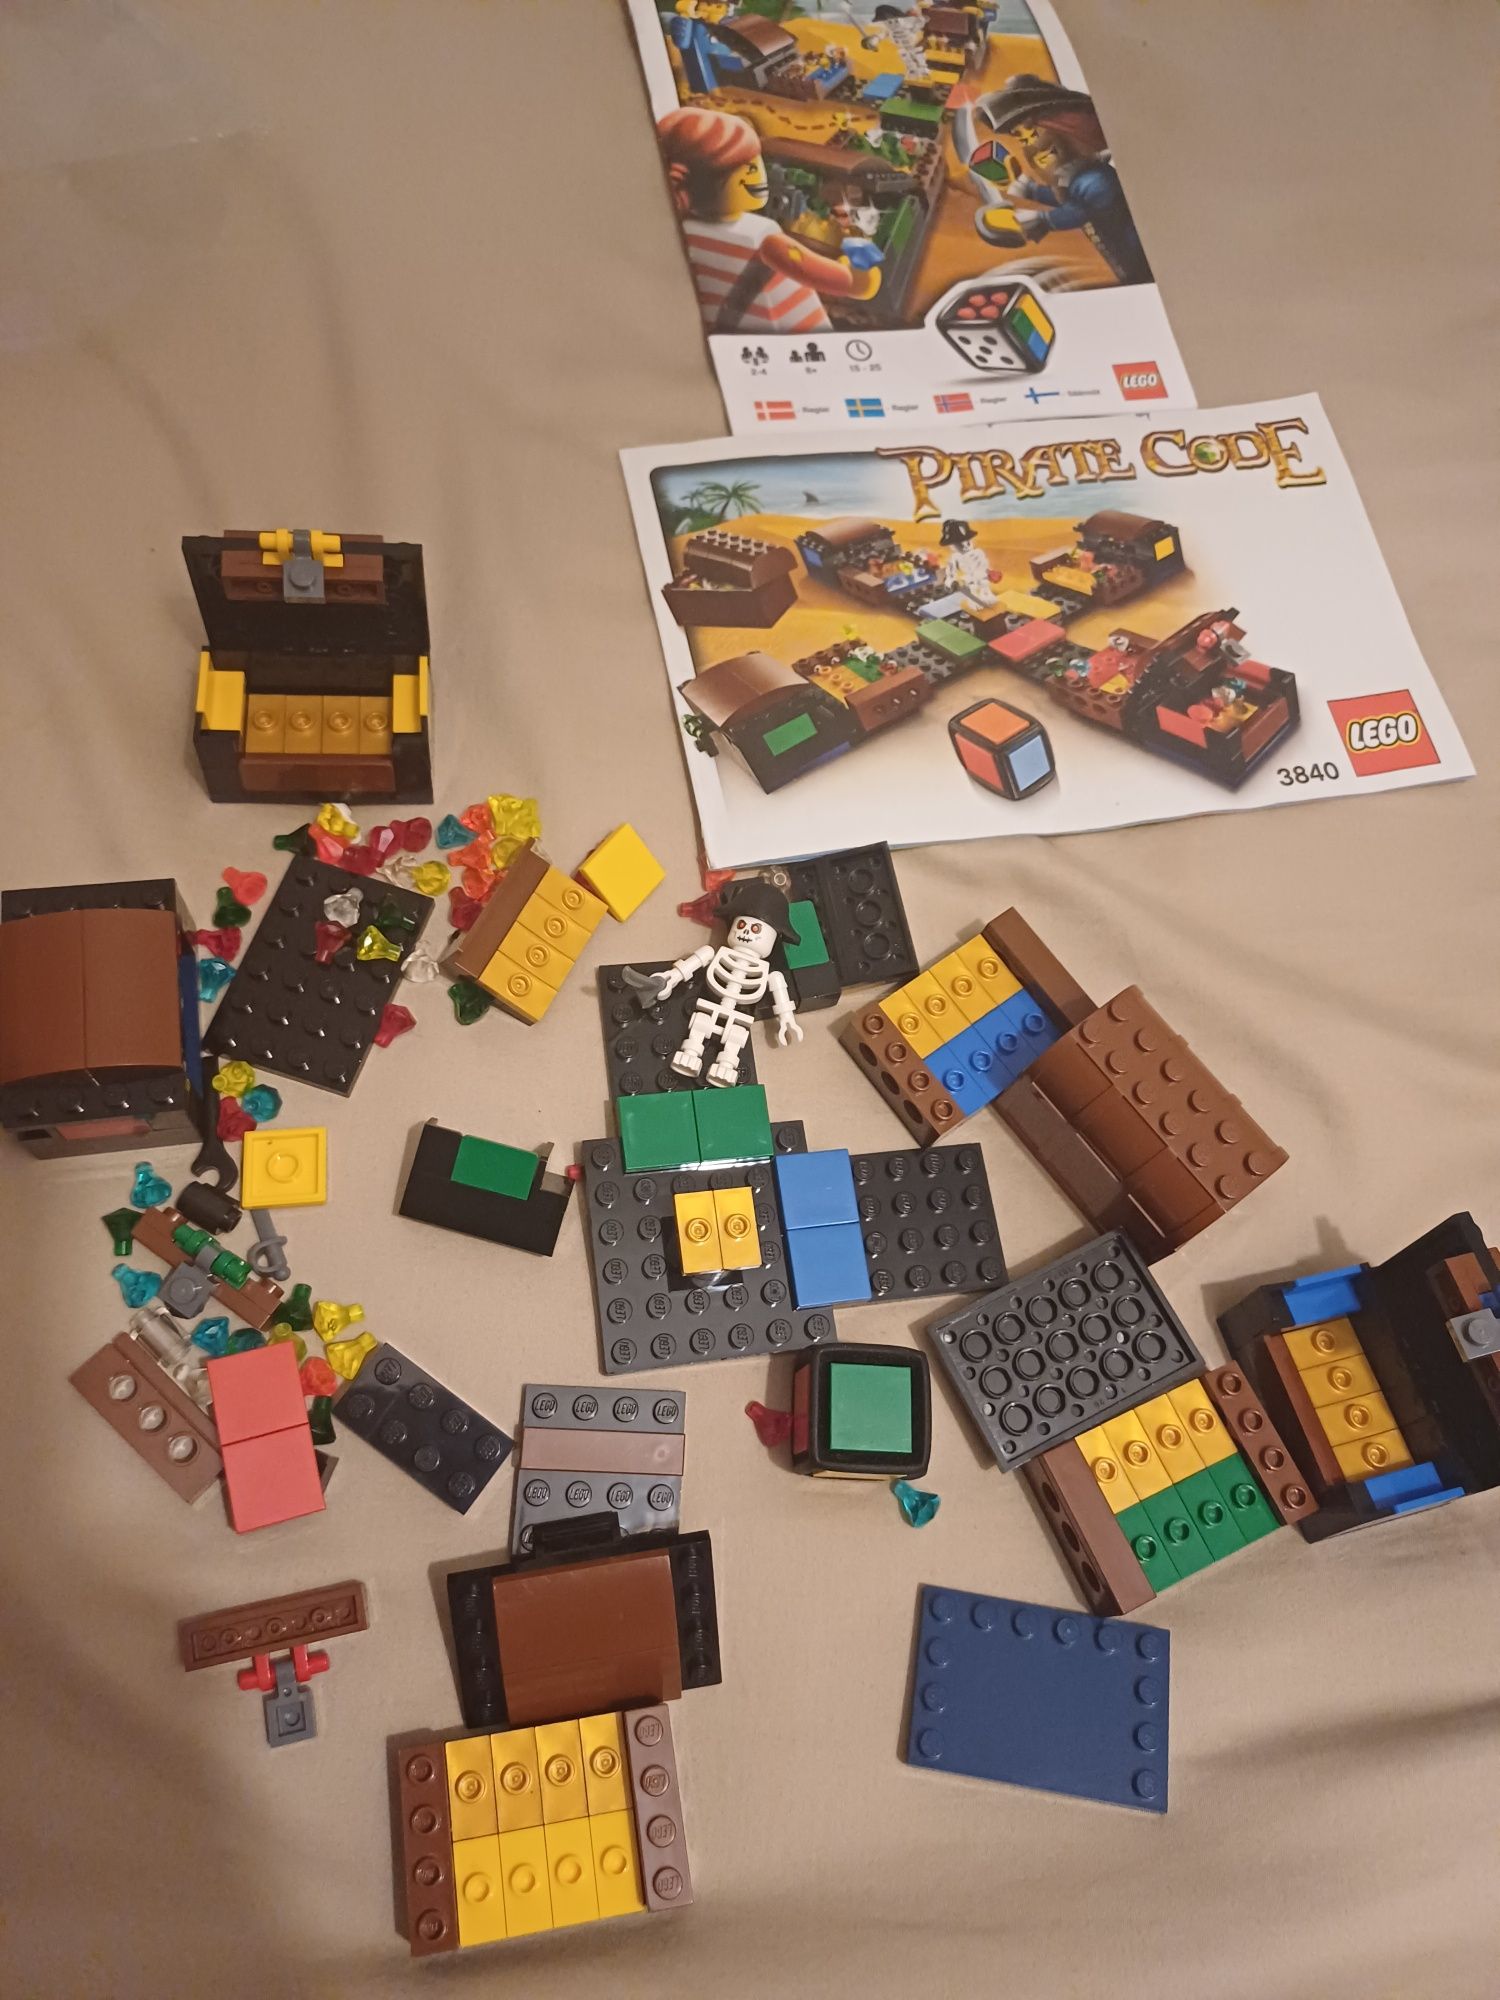 Lego 3840 pirate code